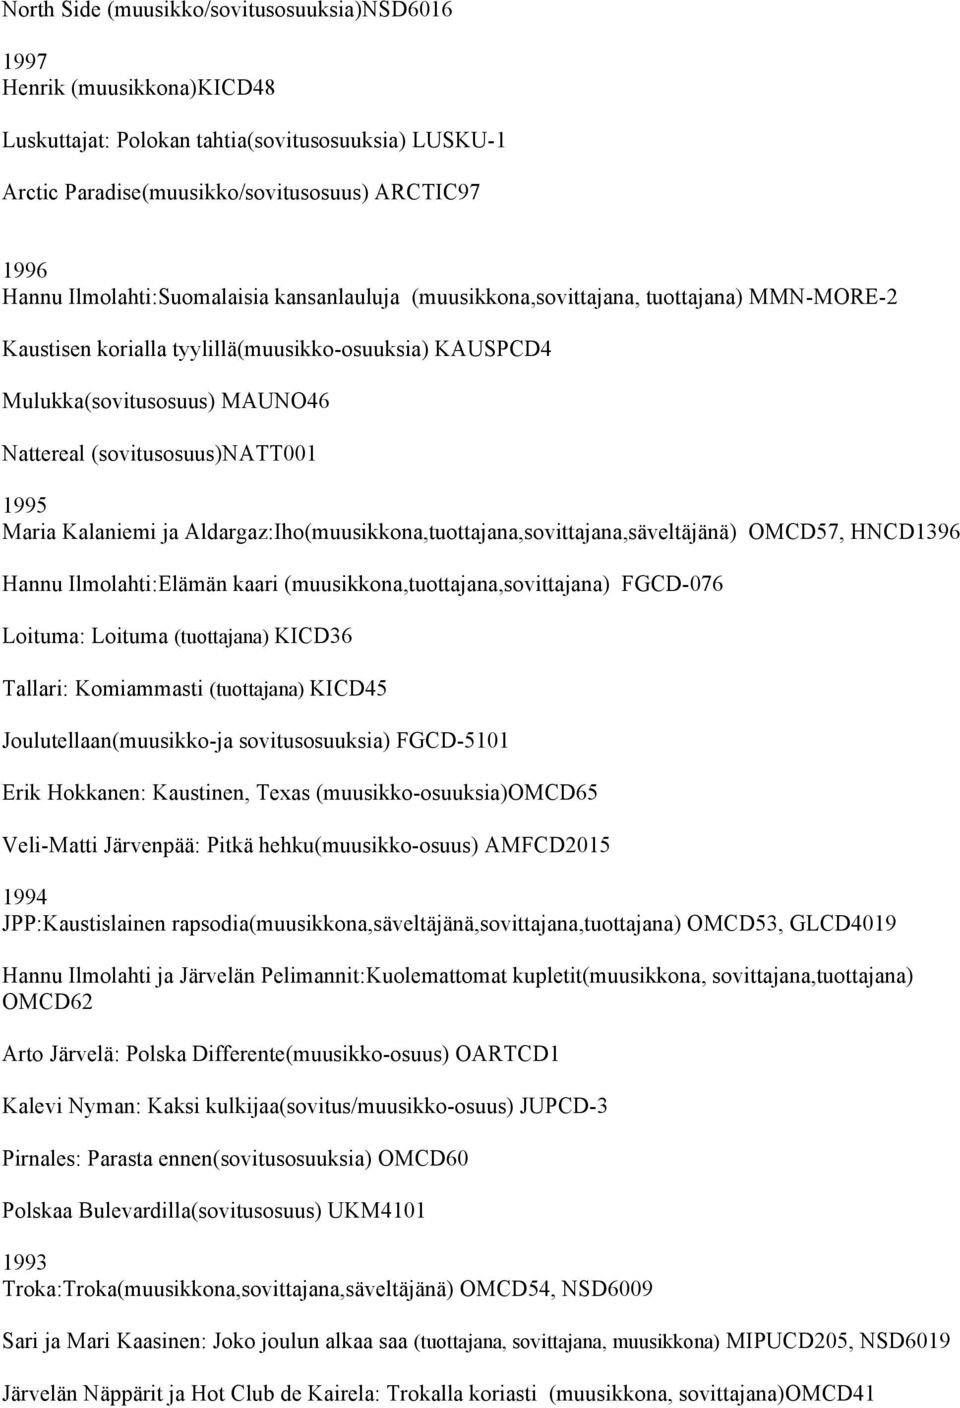 (sovitusosuus)natt001 1995 Maria Kalaniemi ja Aldargaz:Iho(muusikkona,tuottajana,sovittajana,säveltäjänä) OMCD57, HNCD1396 Hannu Ilmolahti:Elämän kaari (muusikkona,tuottajana,sovittajana) FGCD-076